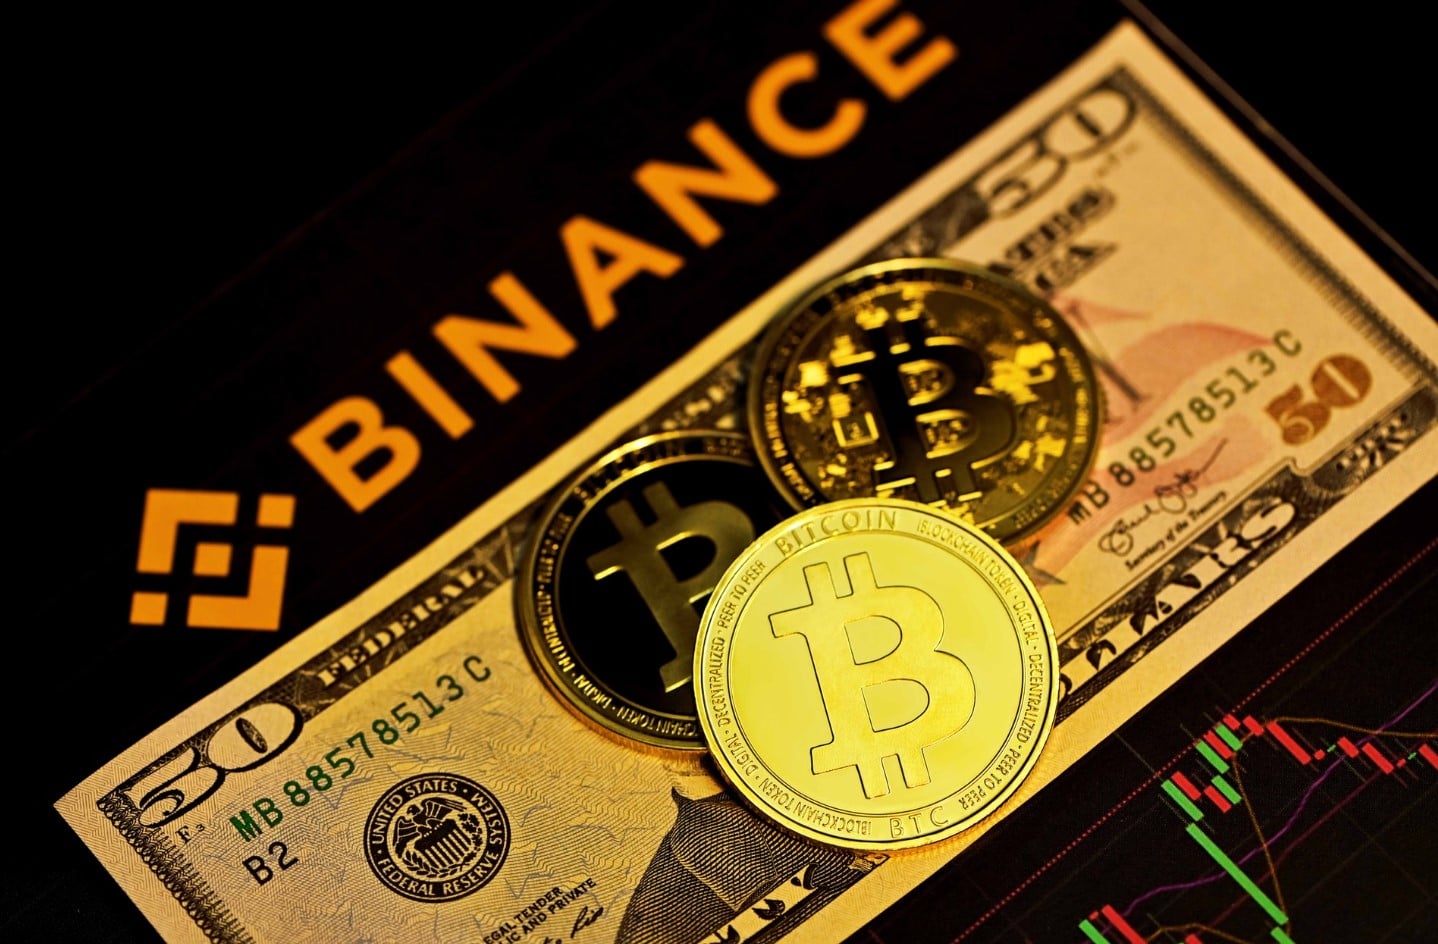 Binance ยกเลิกค่าธรรมเนียมการซื้อขาย Bitcoin เนื่องในโอกาสฉลองครบรอบ 5 ปี